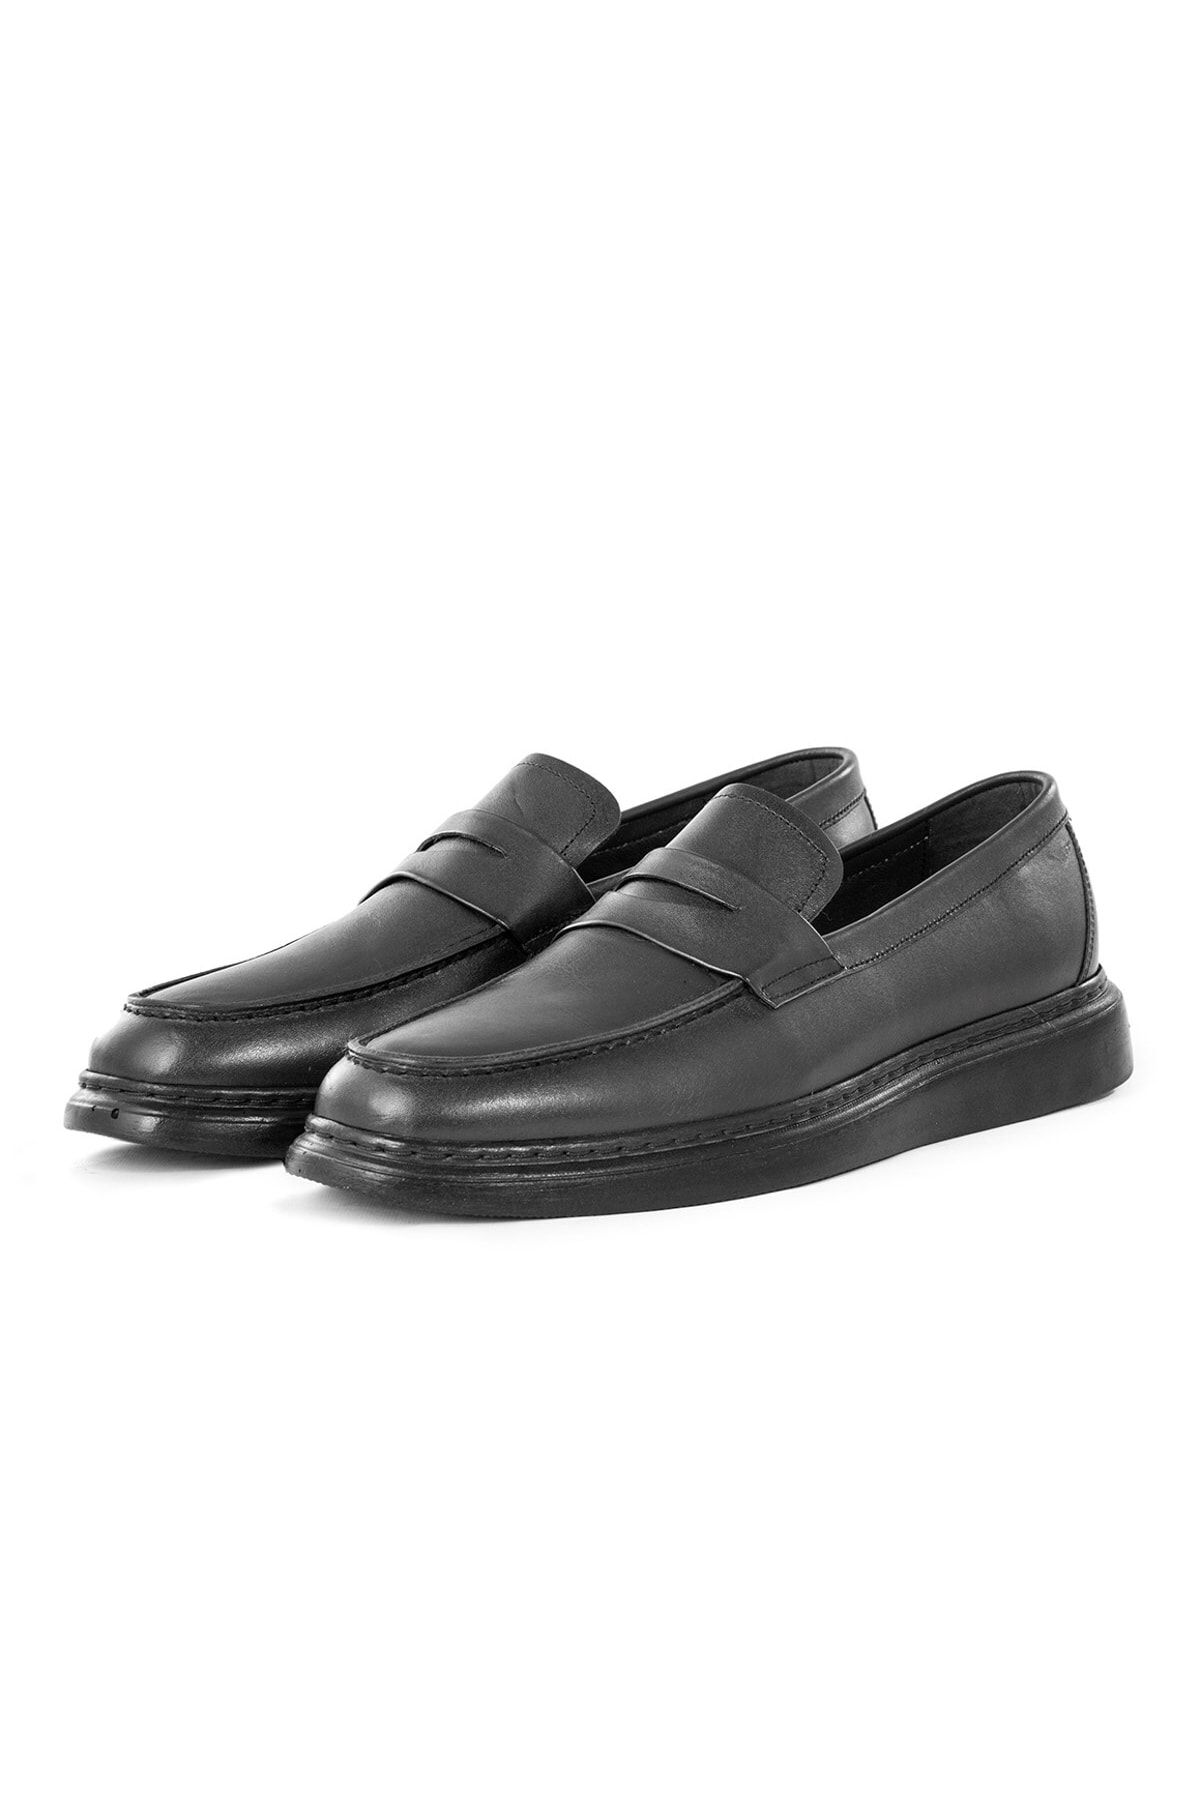 Ducavelli Premio Hakiki Deri Erkek Günlük Klasik Ayakkabı, Hakiki Deri Loafer Klasik Ayakkabı